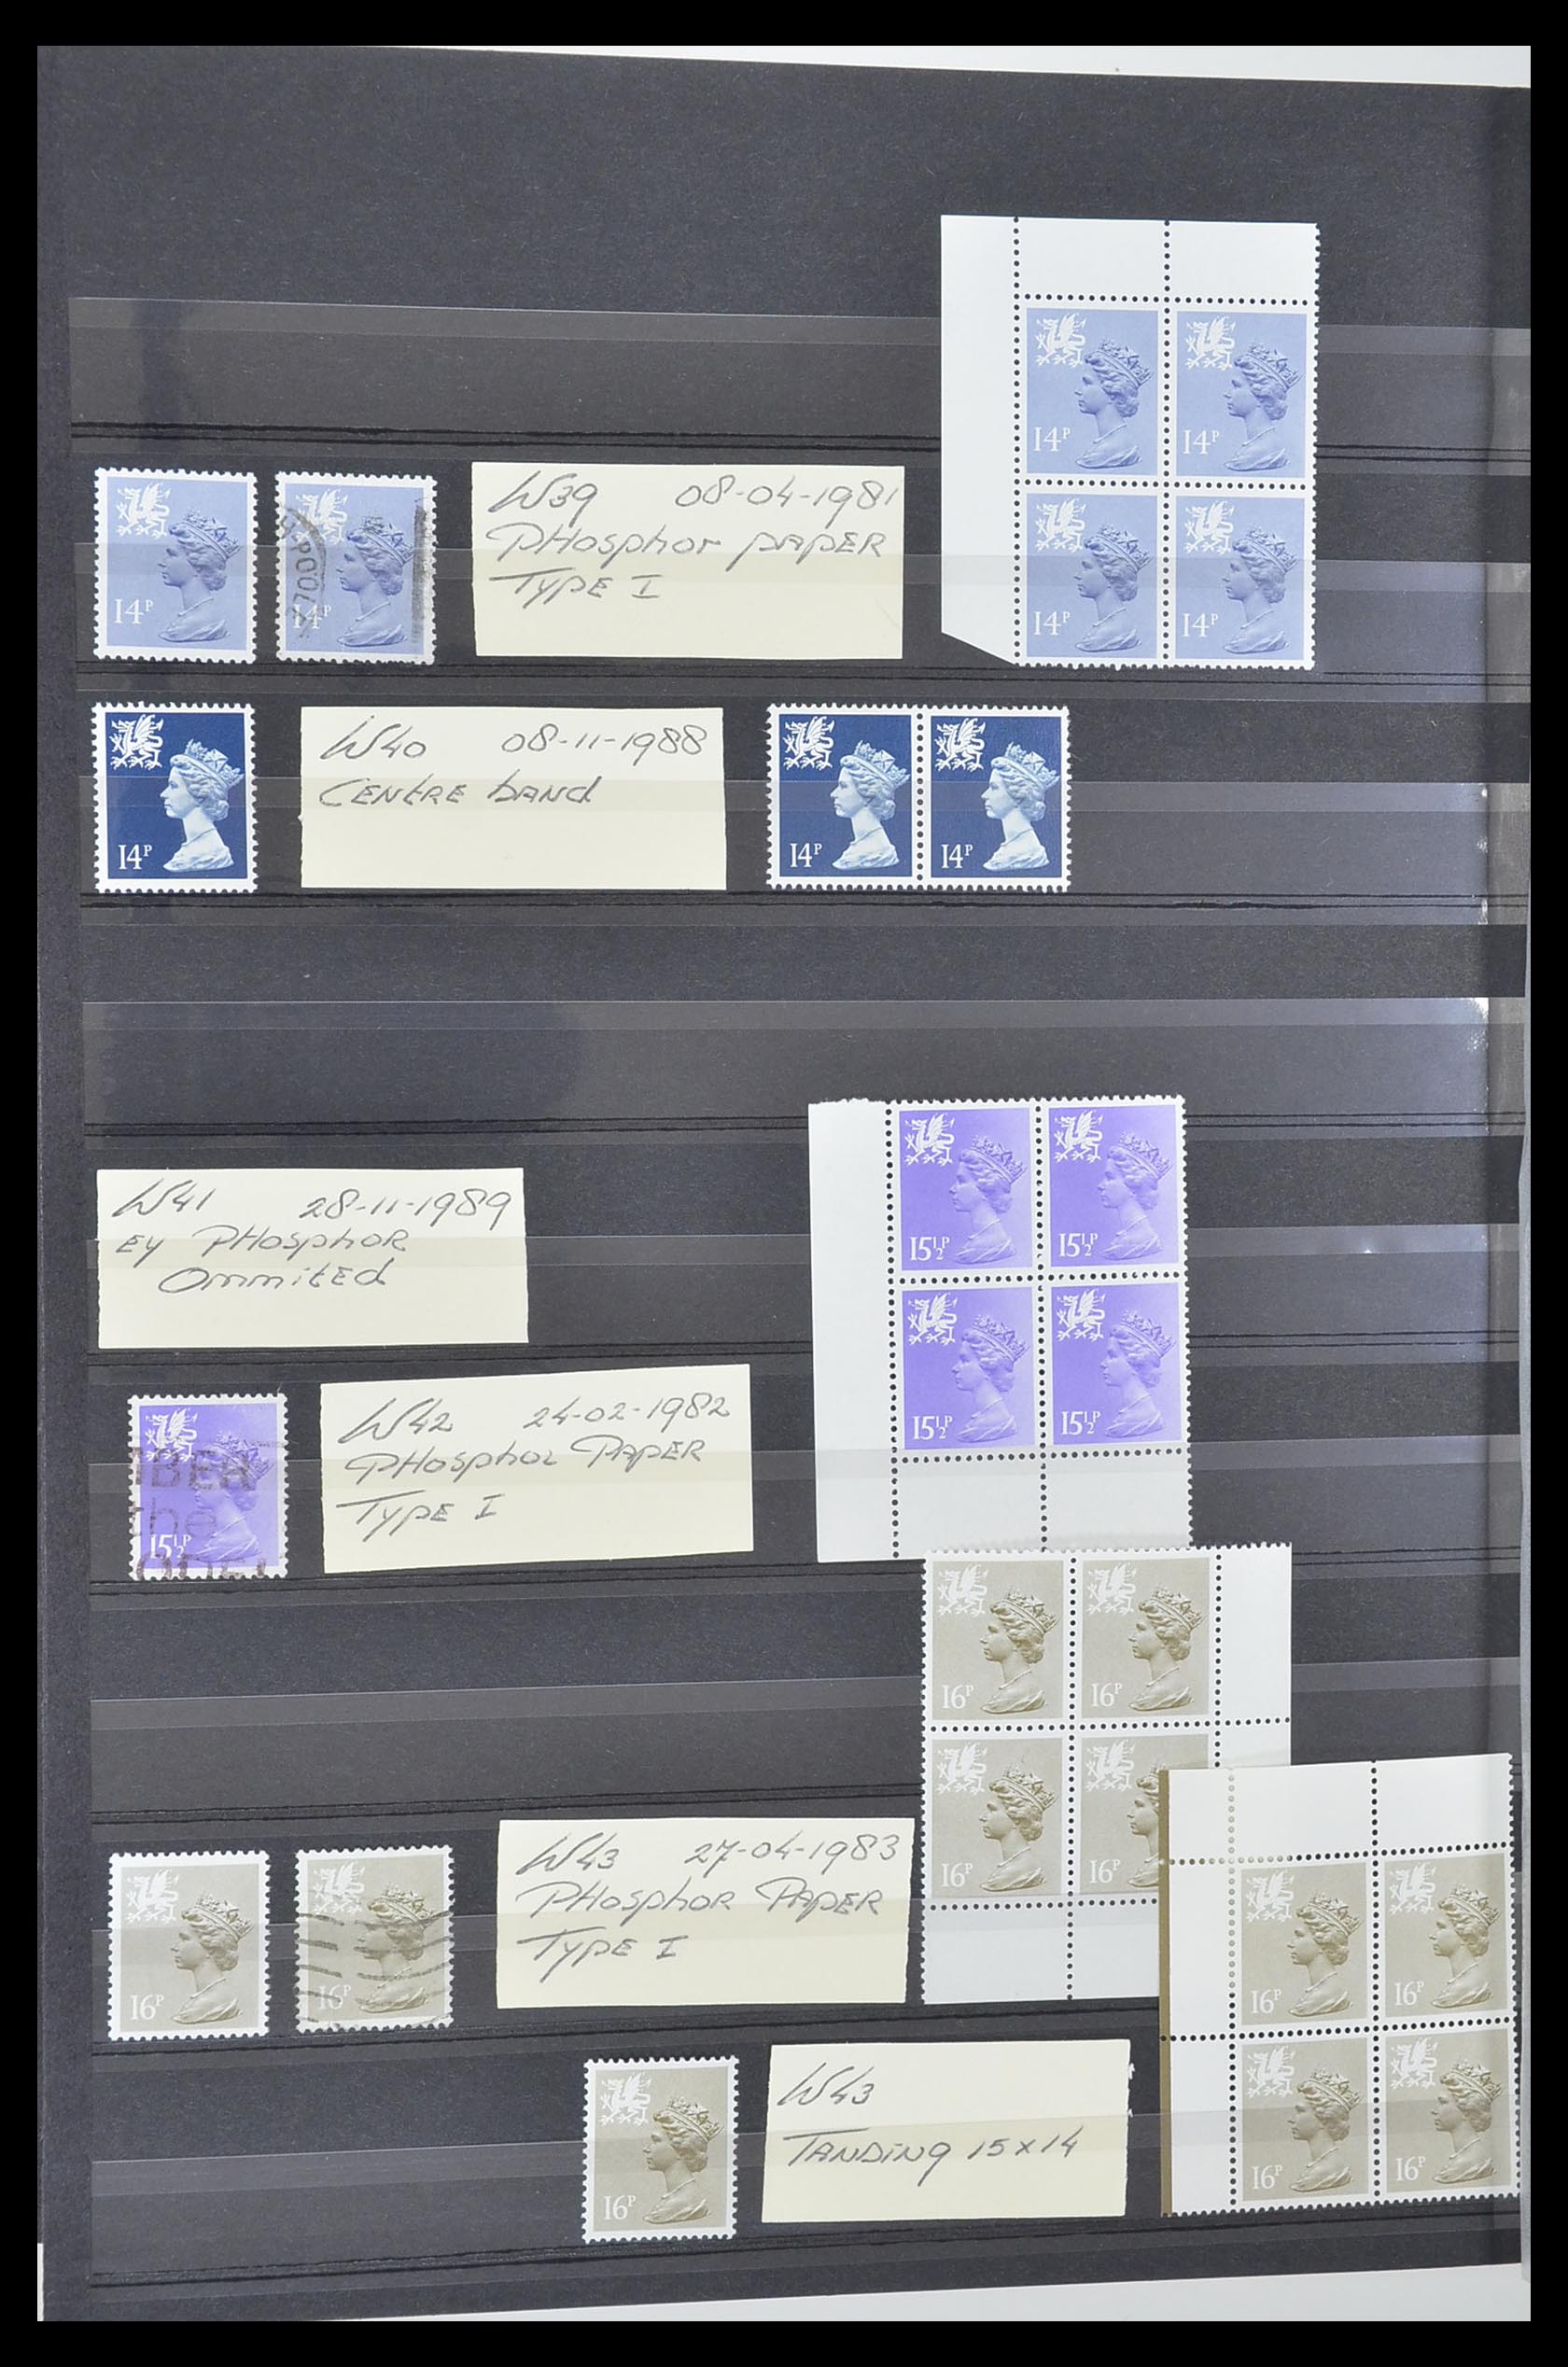 33803 033 - Postzegelverzameling 33803 Engeland regionaal zegels.